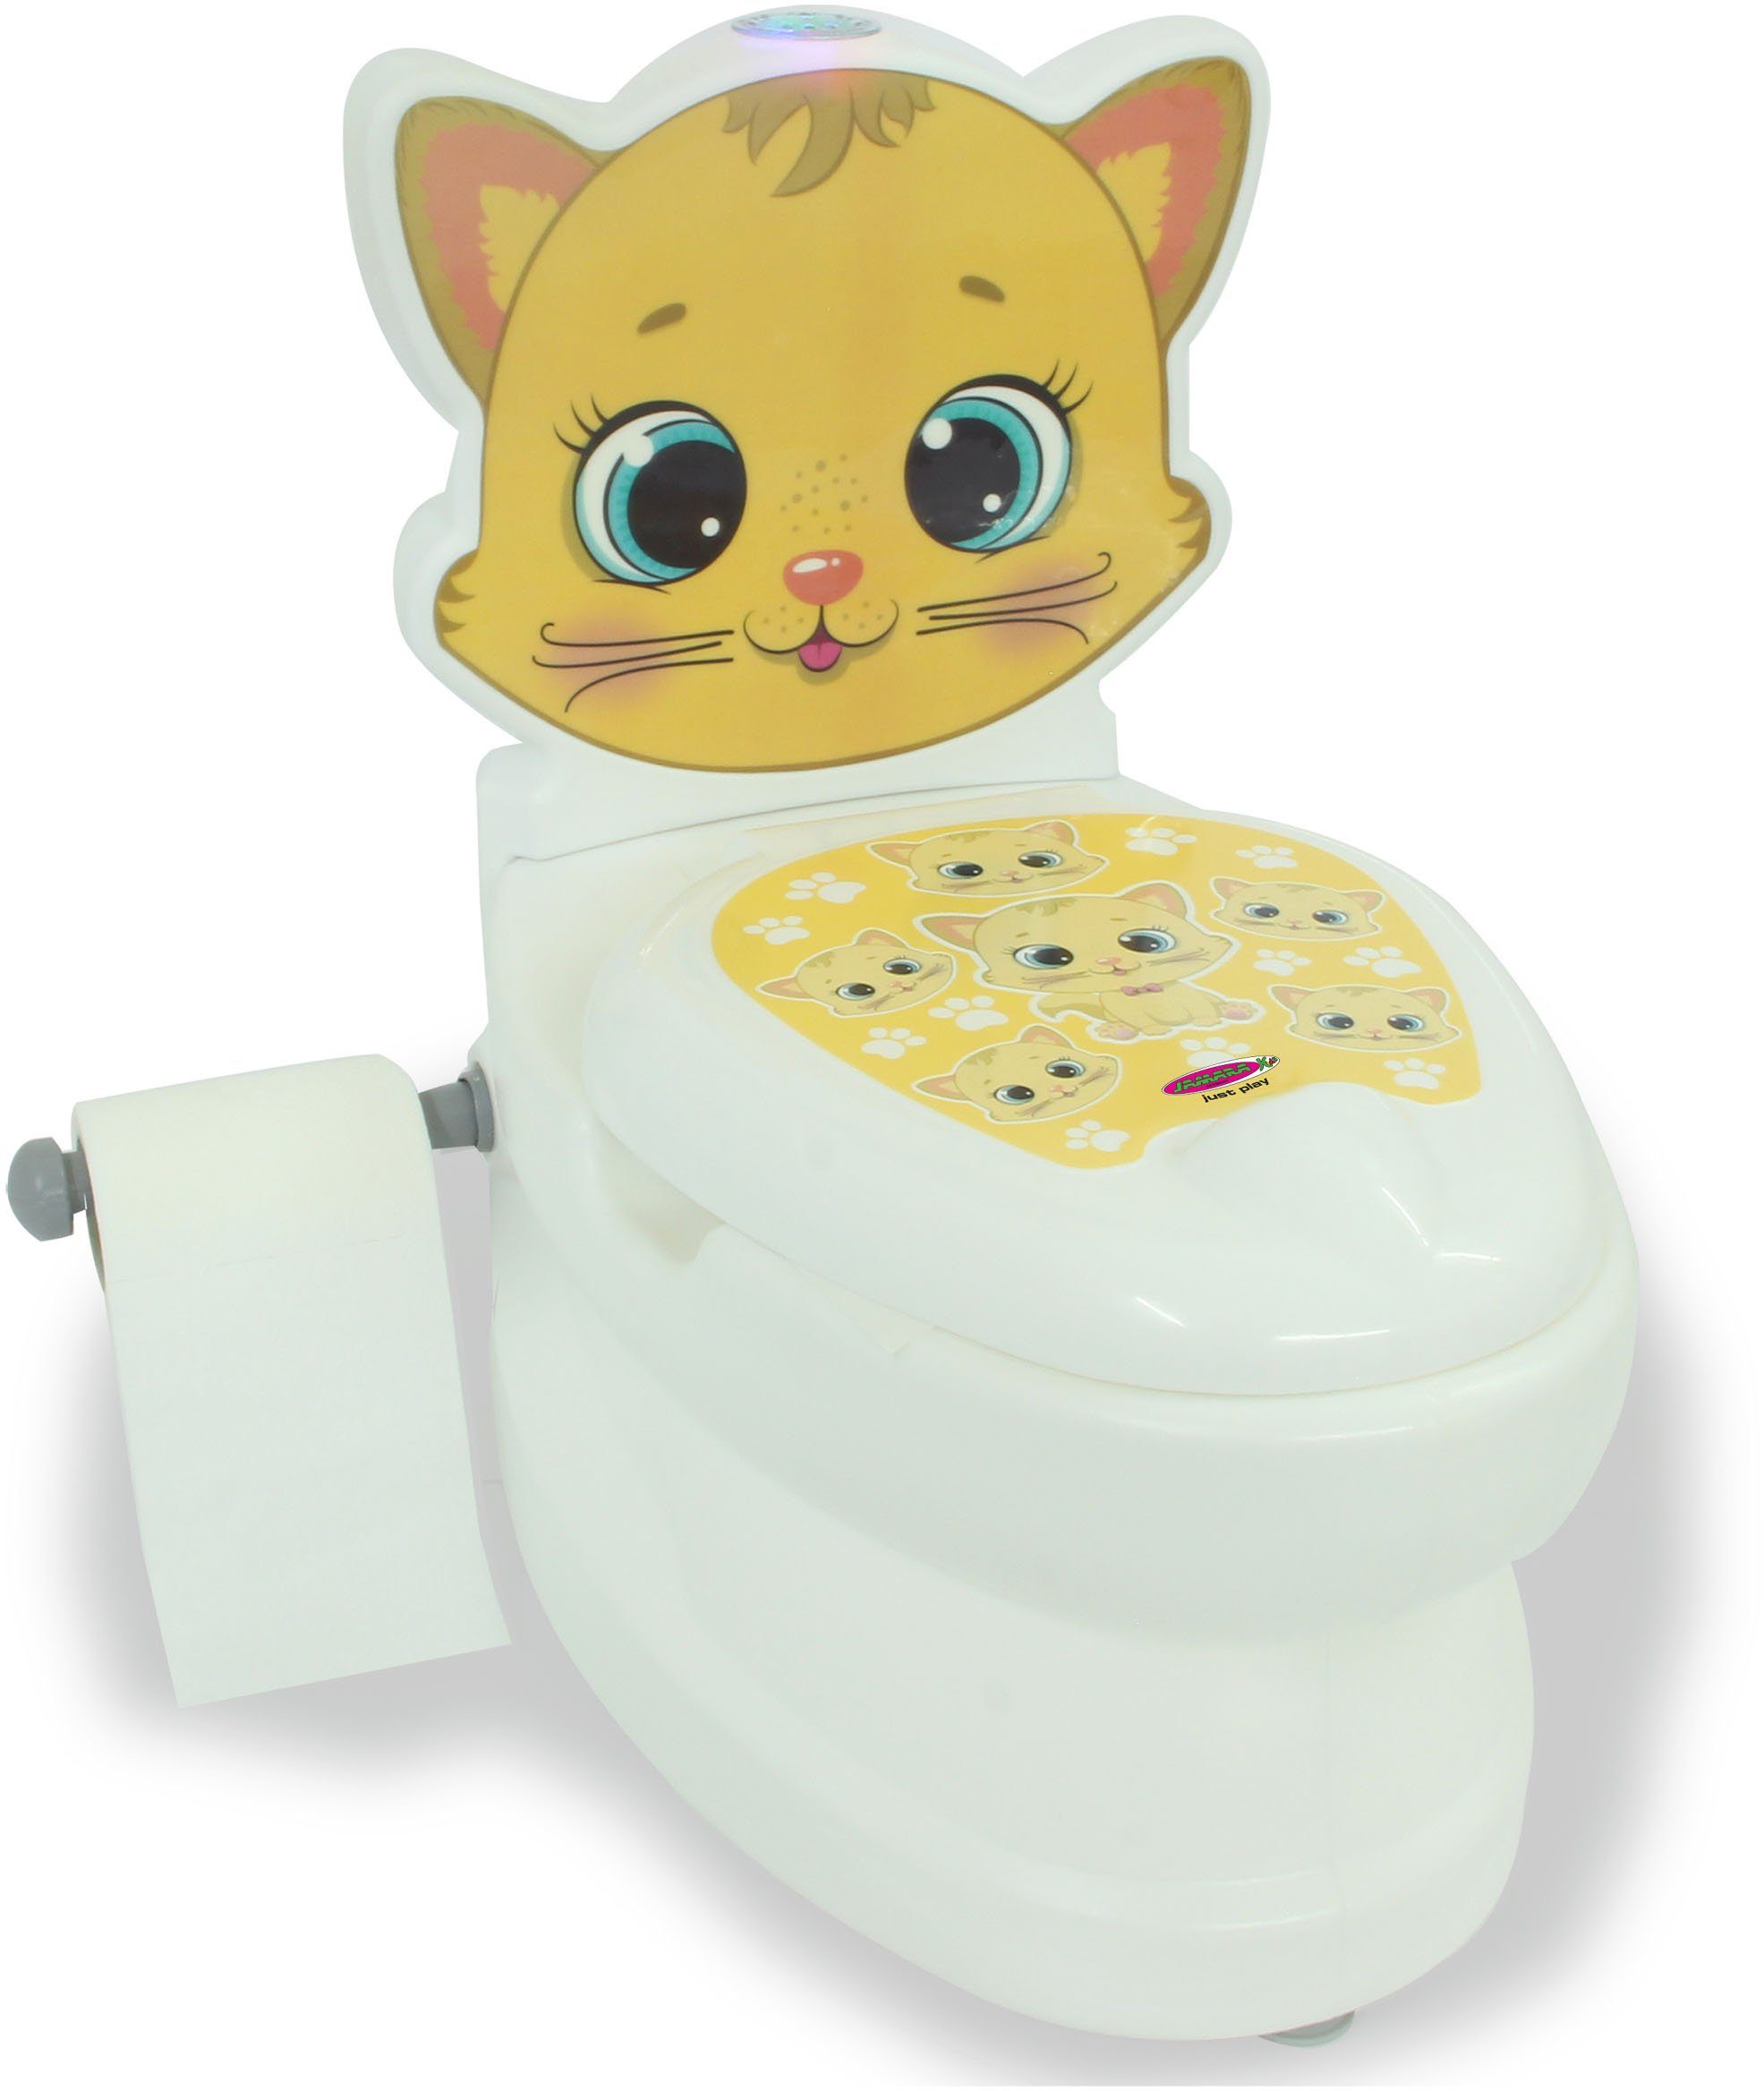 Jamara Toilettentrainer Meine kleine Toilette, zur und Behältnis separat herausgenommen mit werden Reinigung Katze, Spülsound kann Toilettenpapierhalter